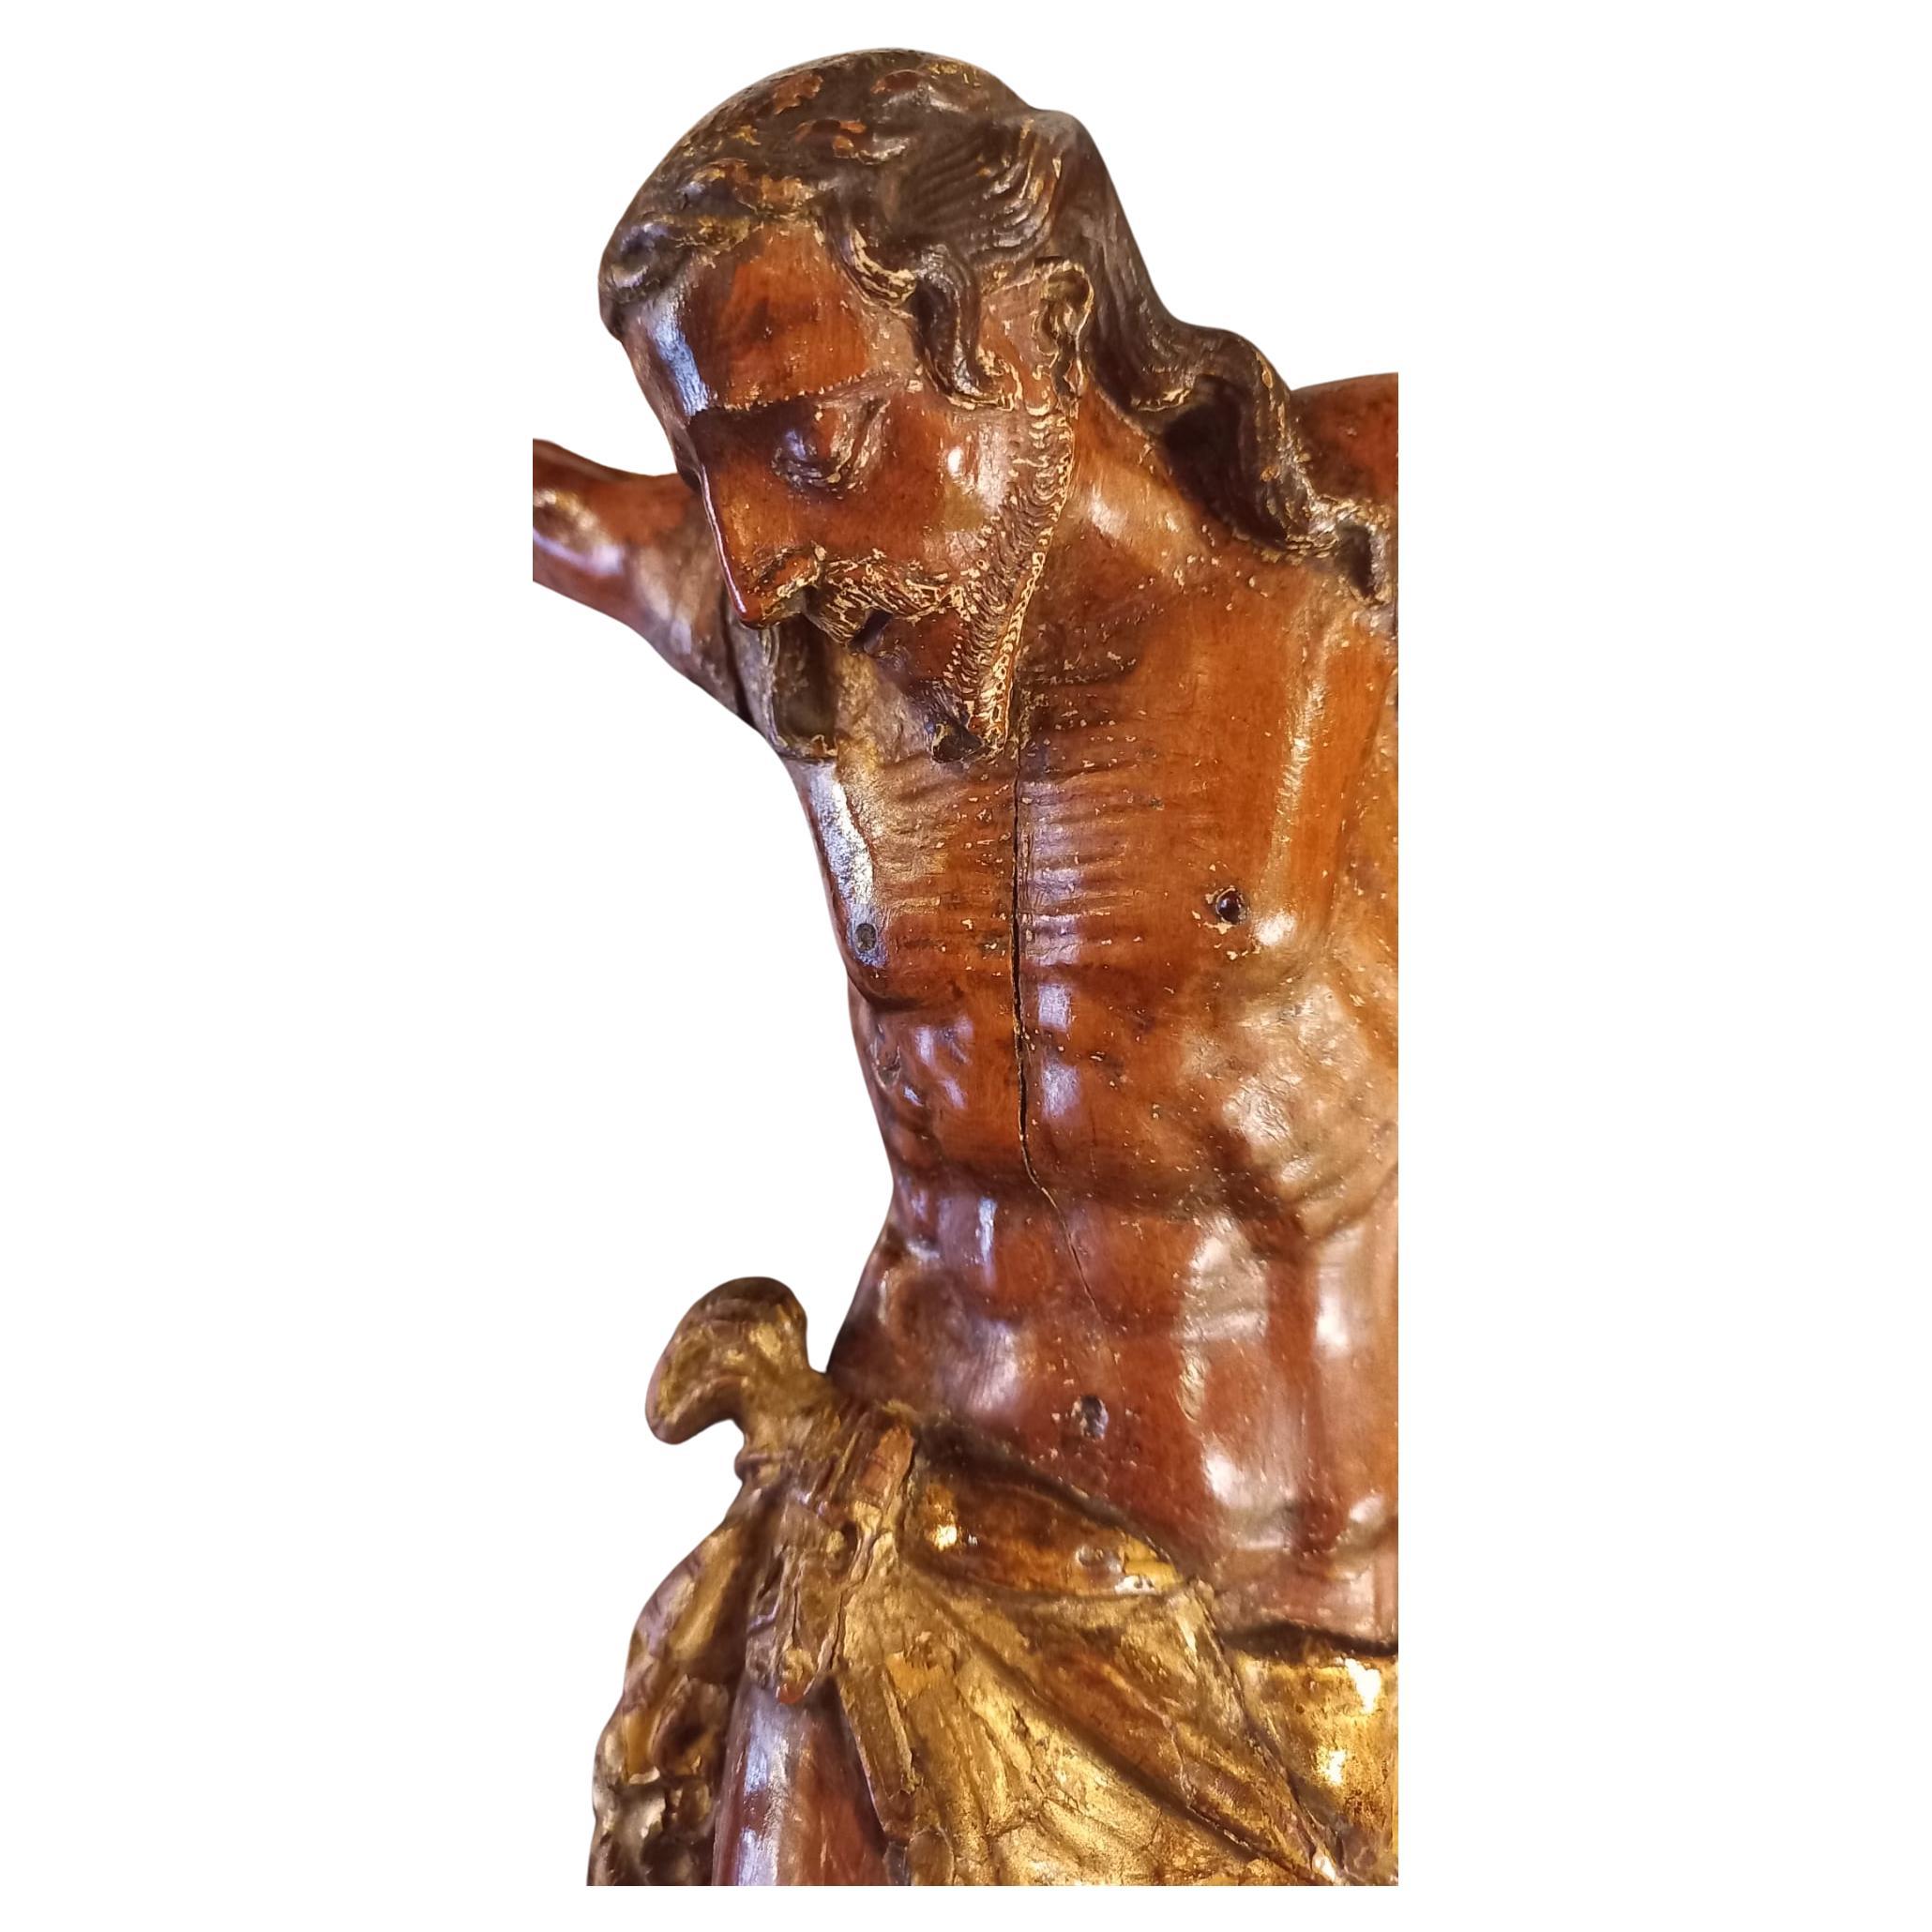 Gekreuzigter Christus in Buchsbaum und vergoldetem Lendenschurz